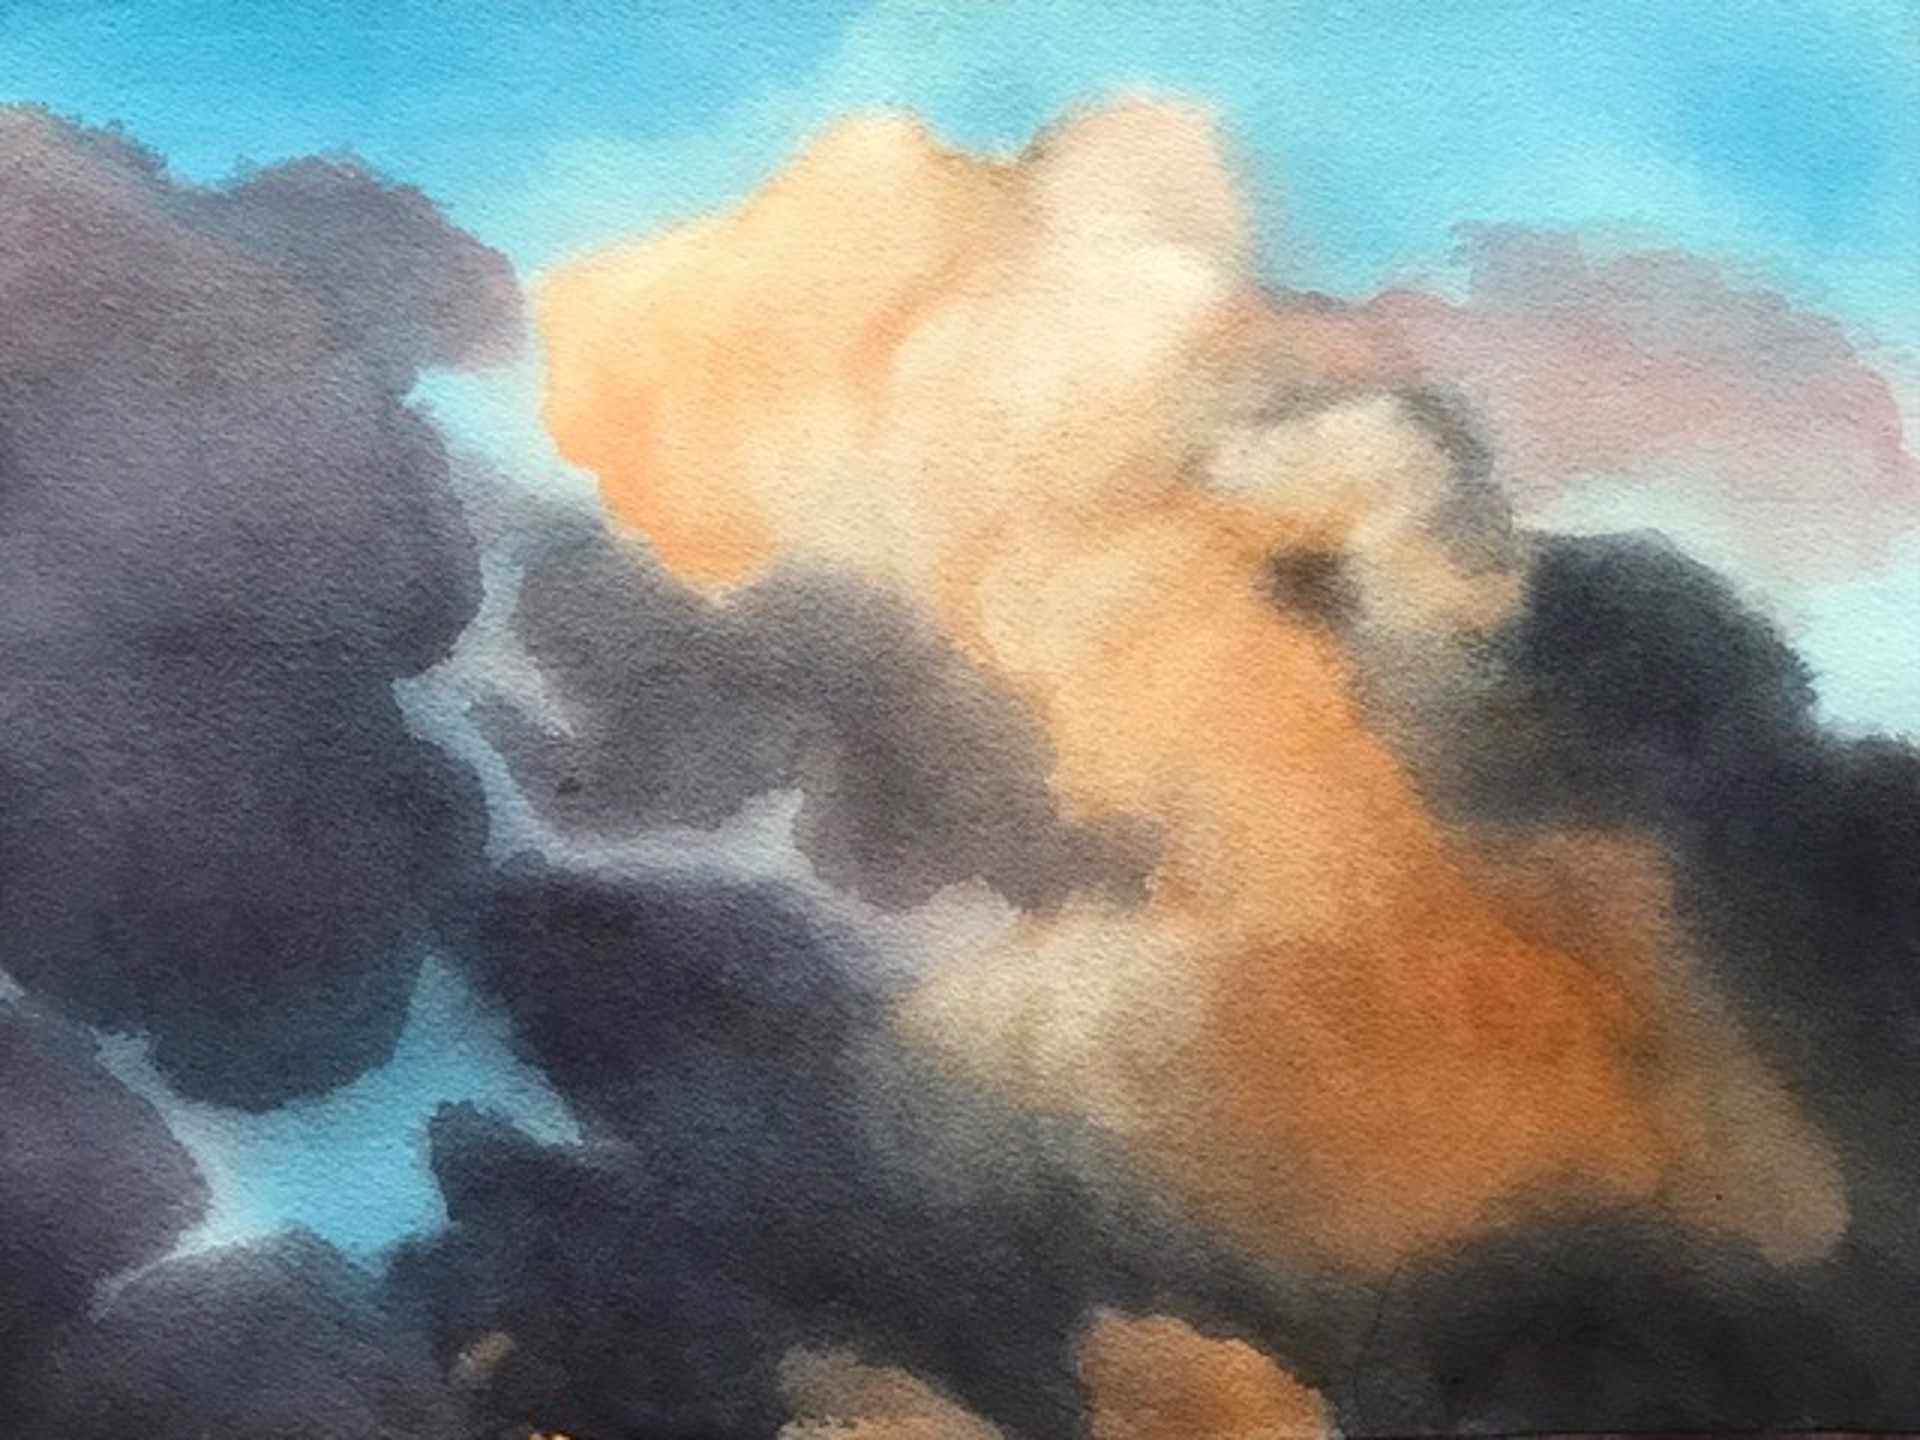 Cloud Study #7 by Ken Mazzu